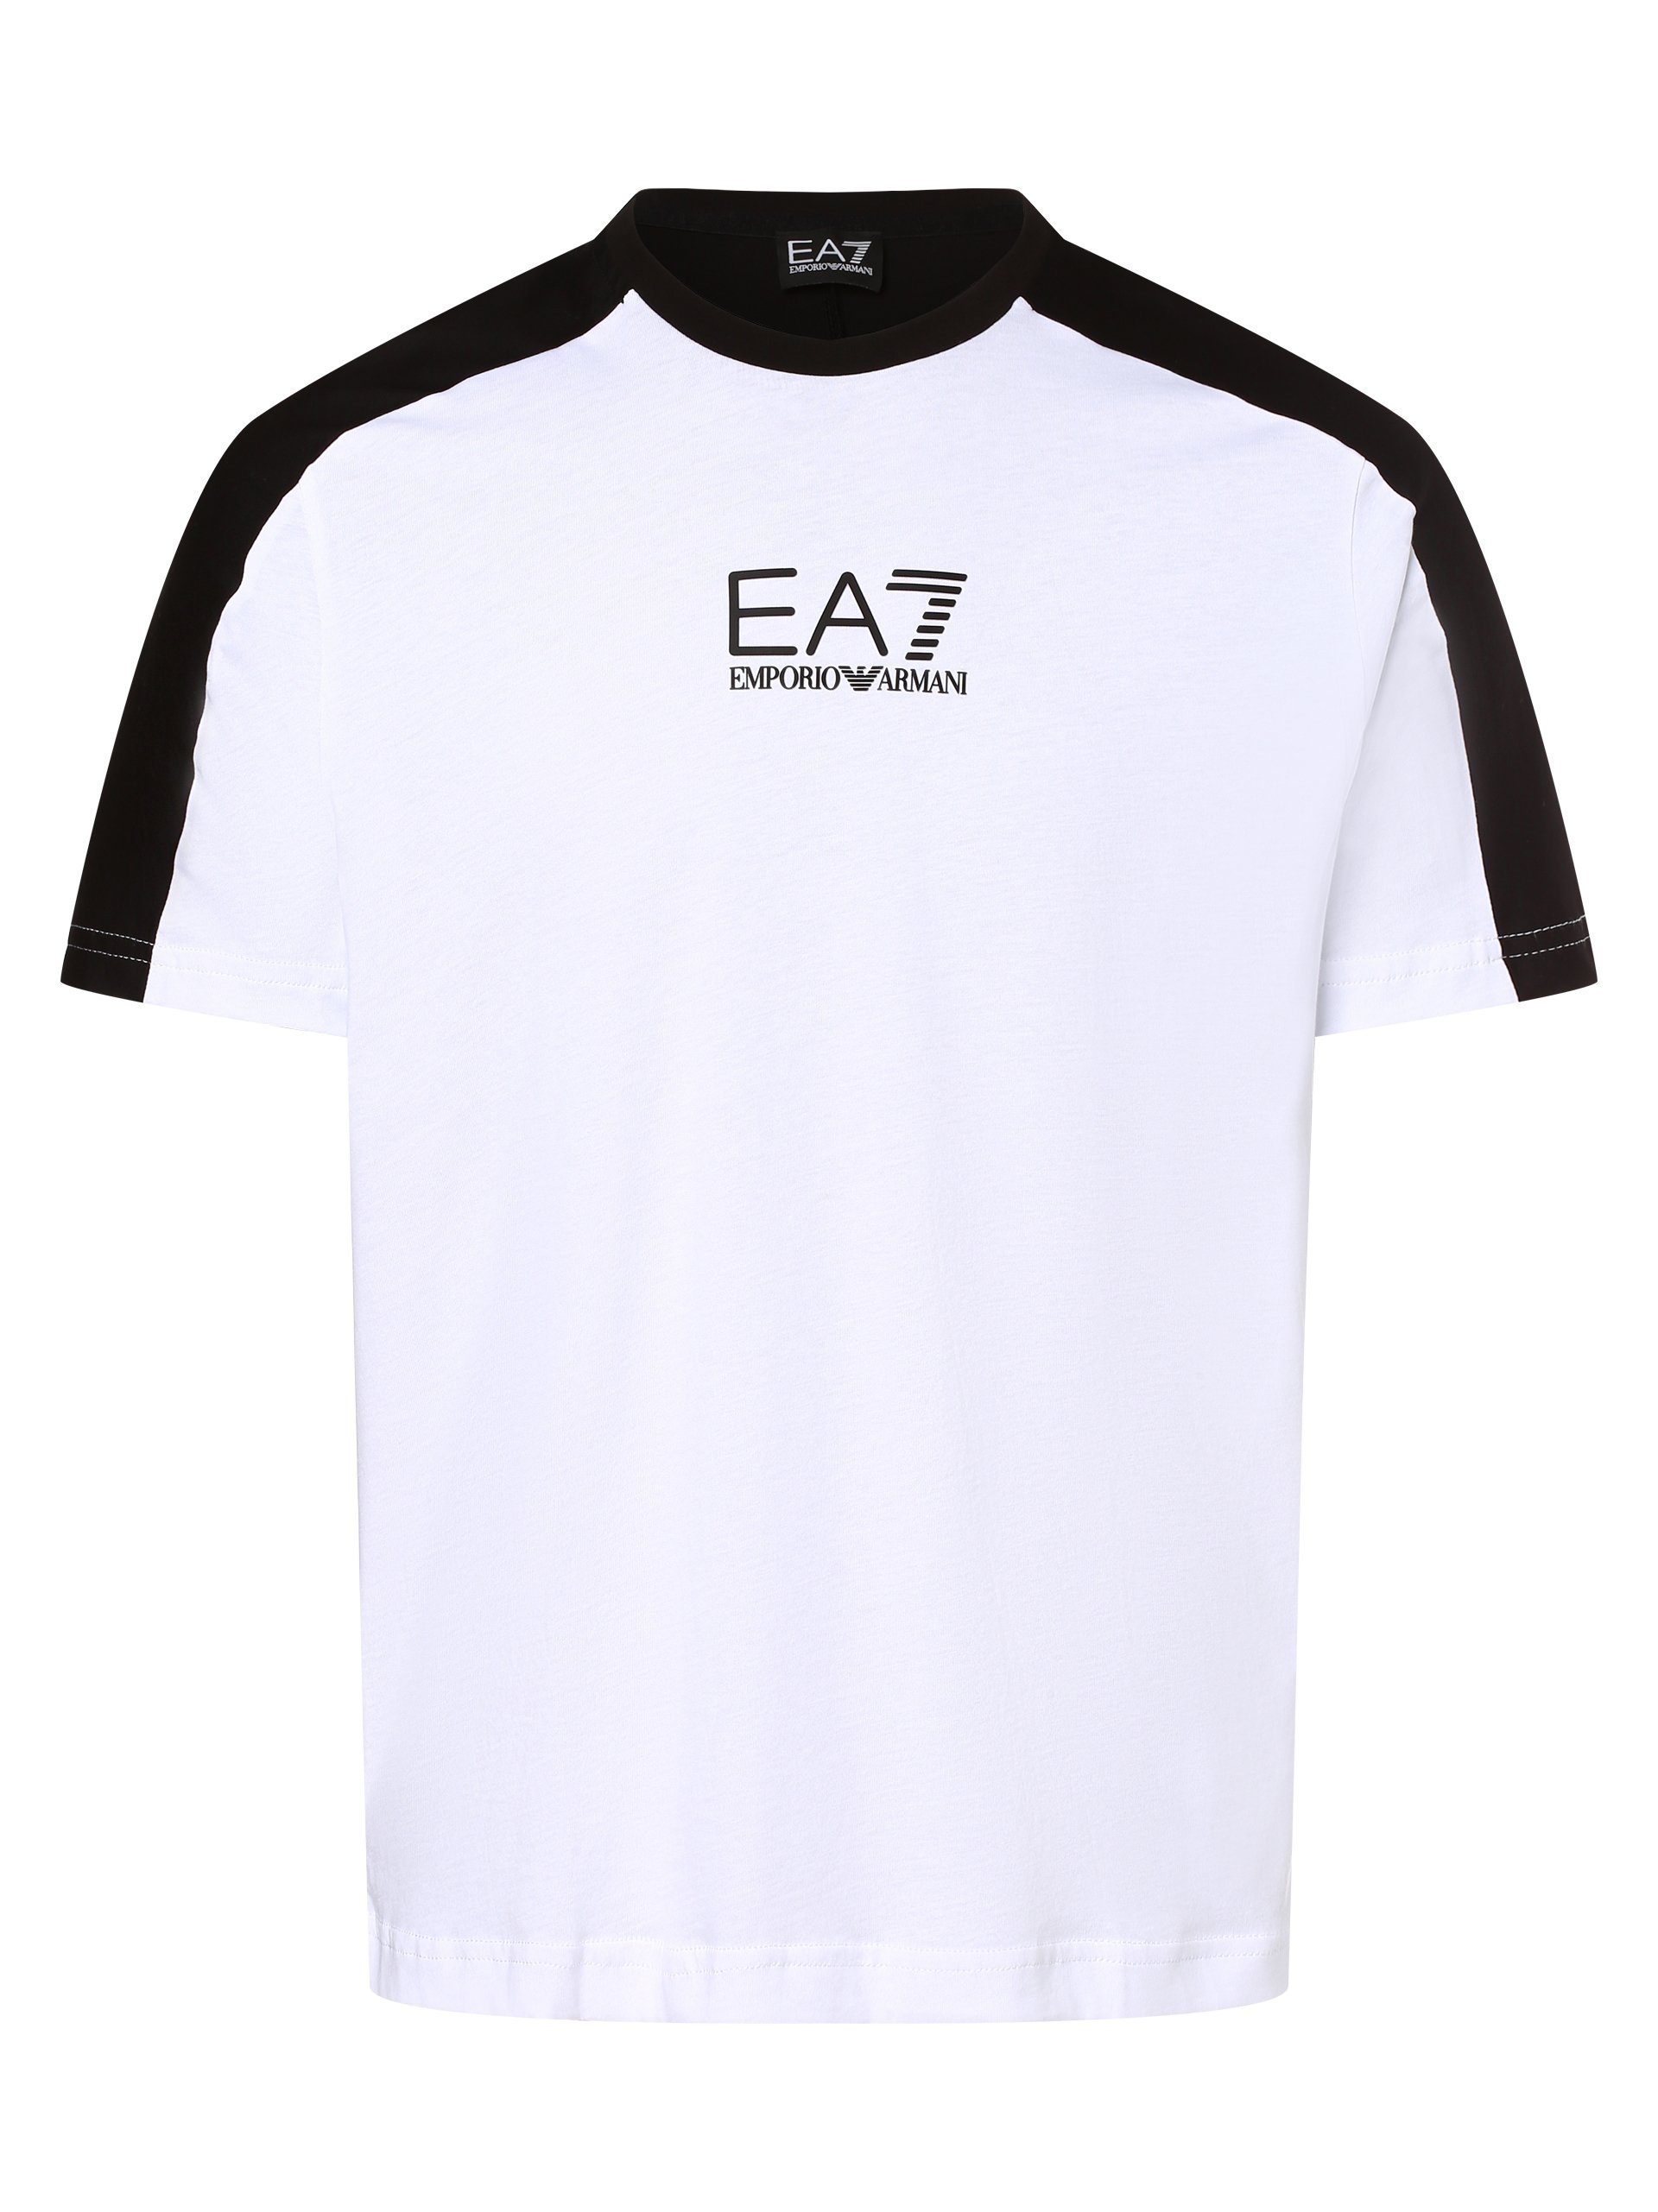 Emporio schwarz Armani weiß T-Shirt